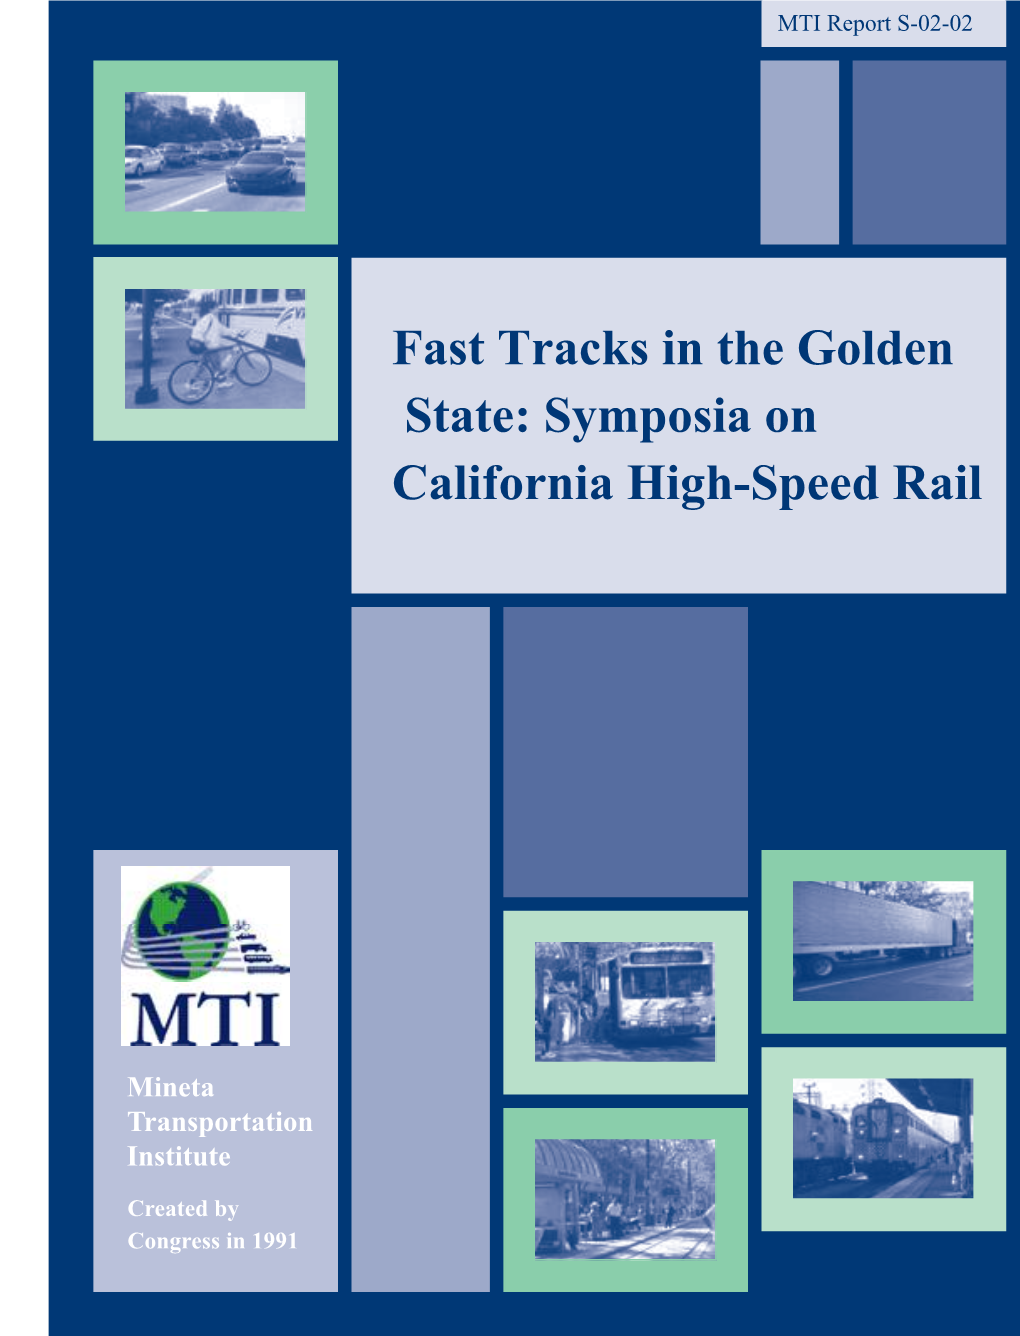 Symposia on California High-Speed Rail